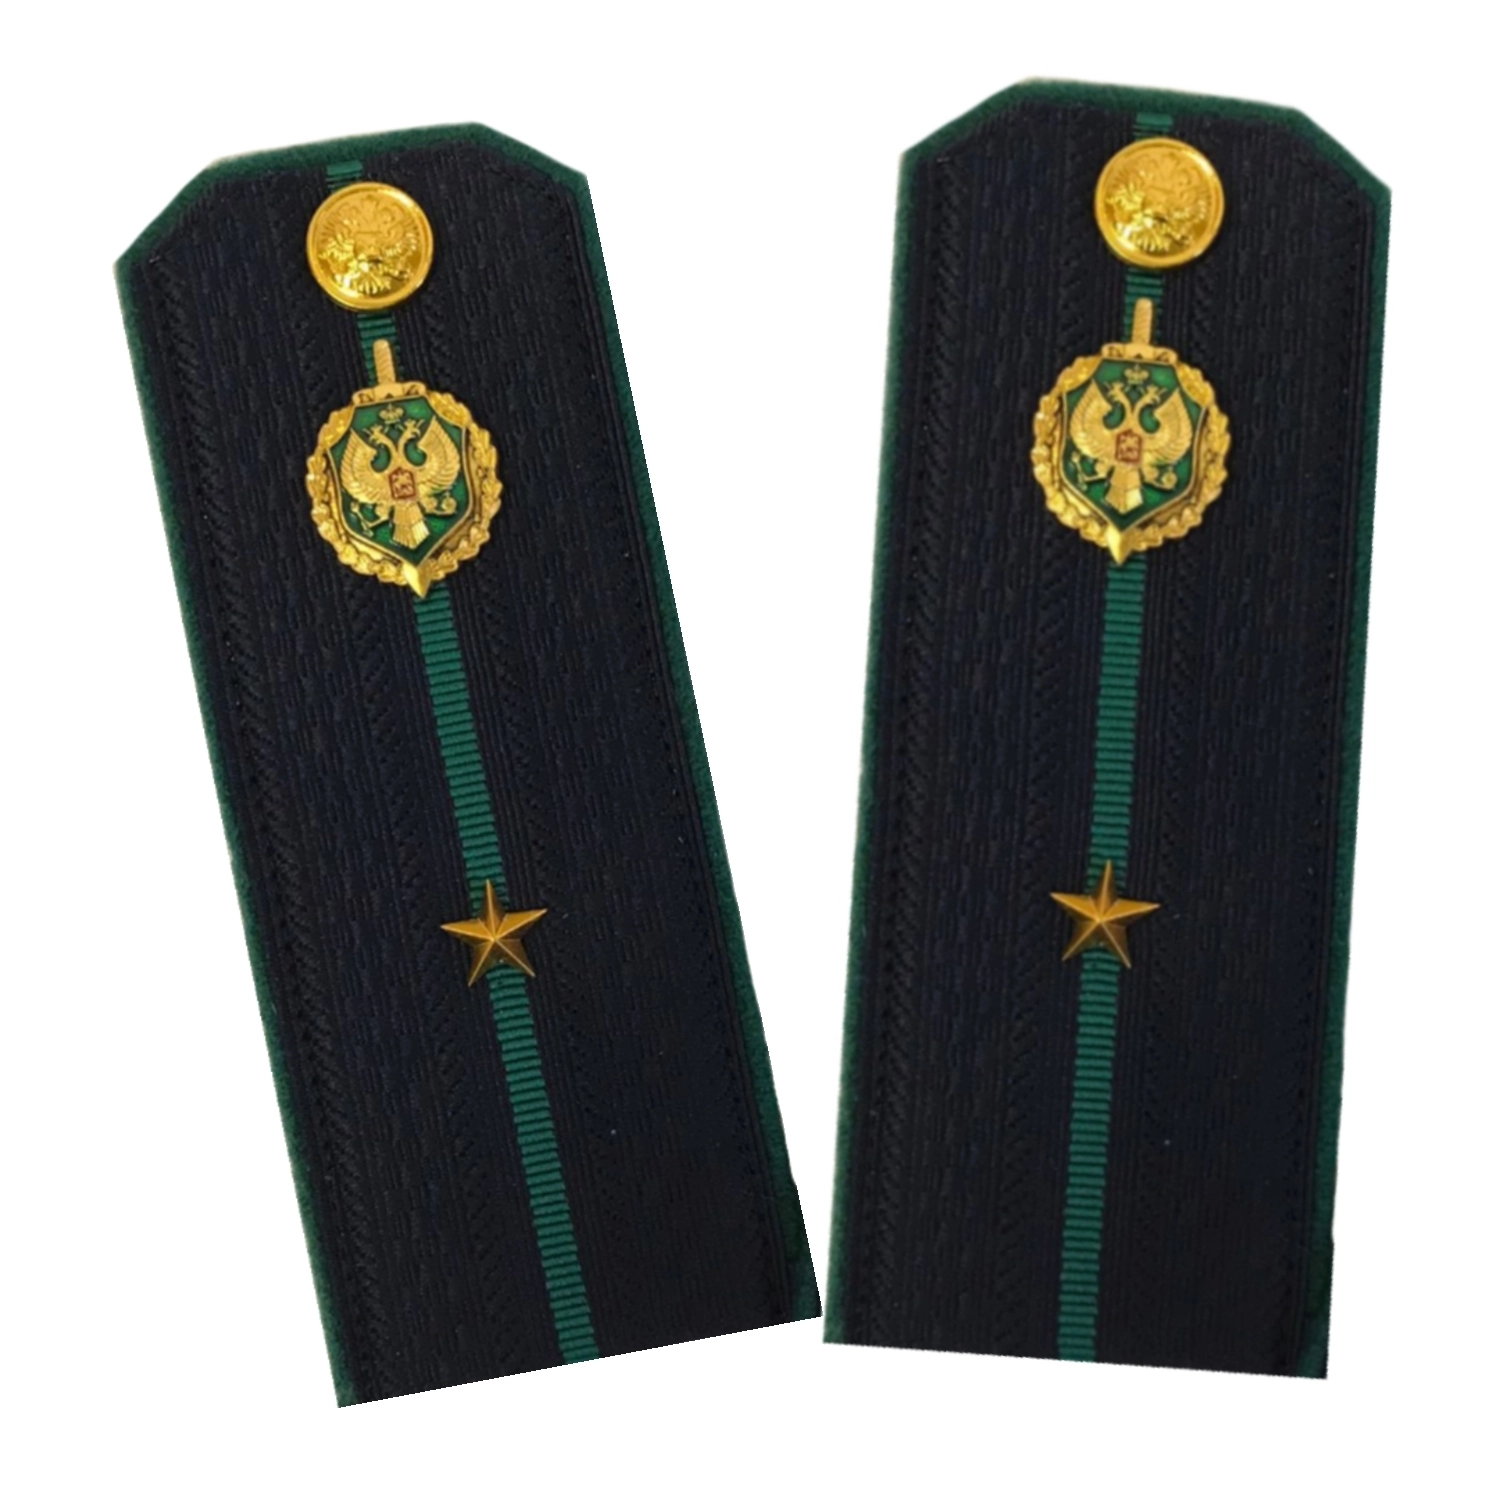 Погоны Пограничной службы ПС ФСБ в сборе картон на куртку звание Младший лейтенант 14х5,5см